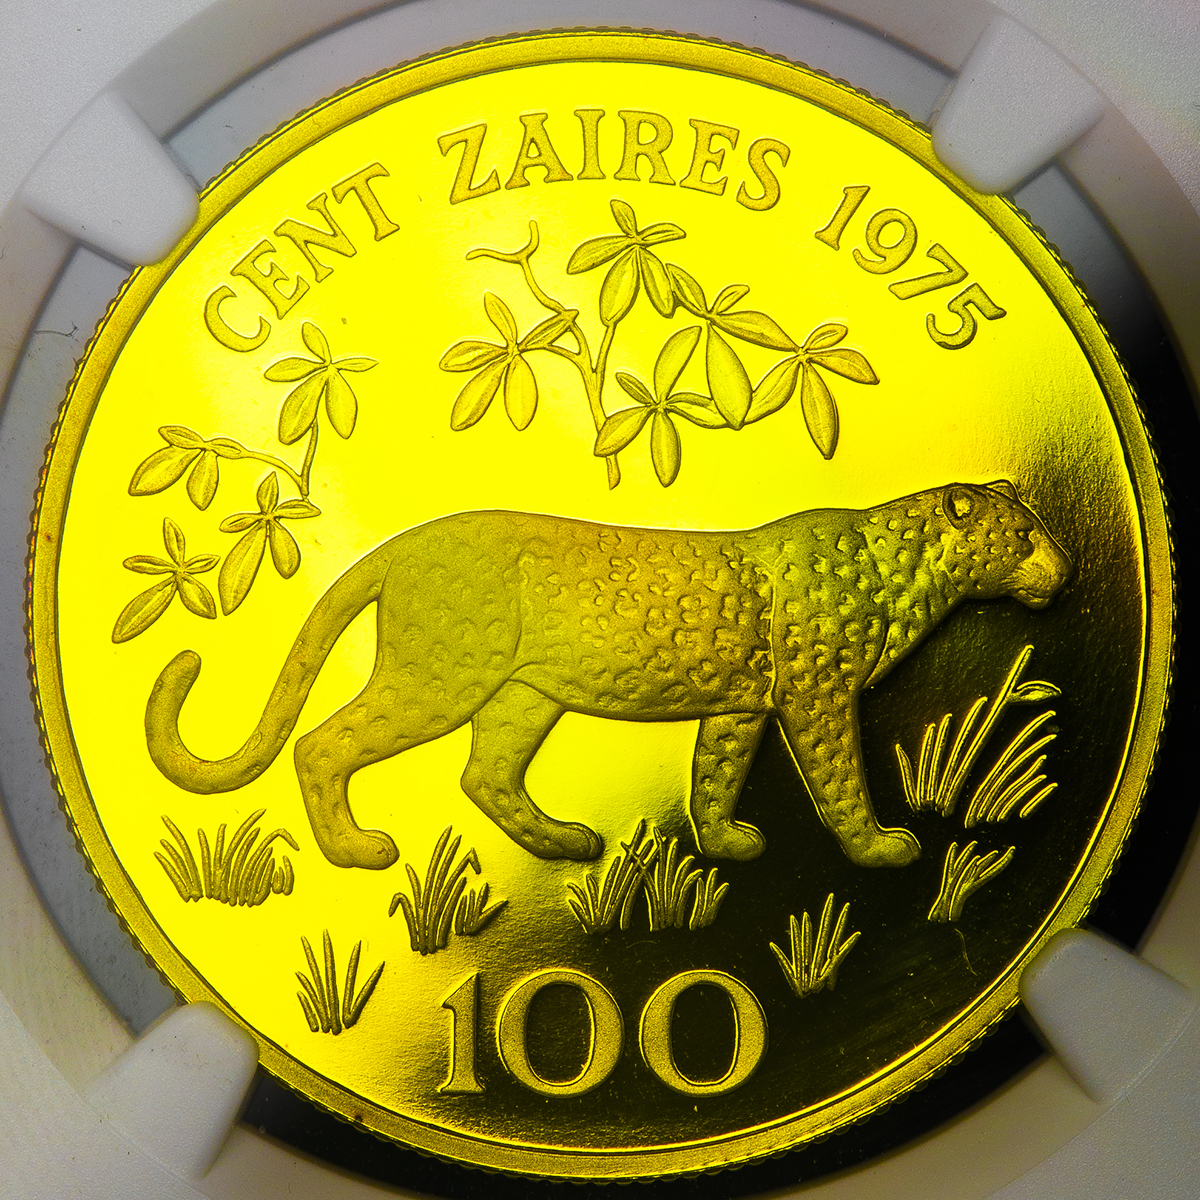 Coin Museum Zaire ザイール 100zaires 1975 Proof